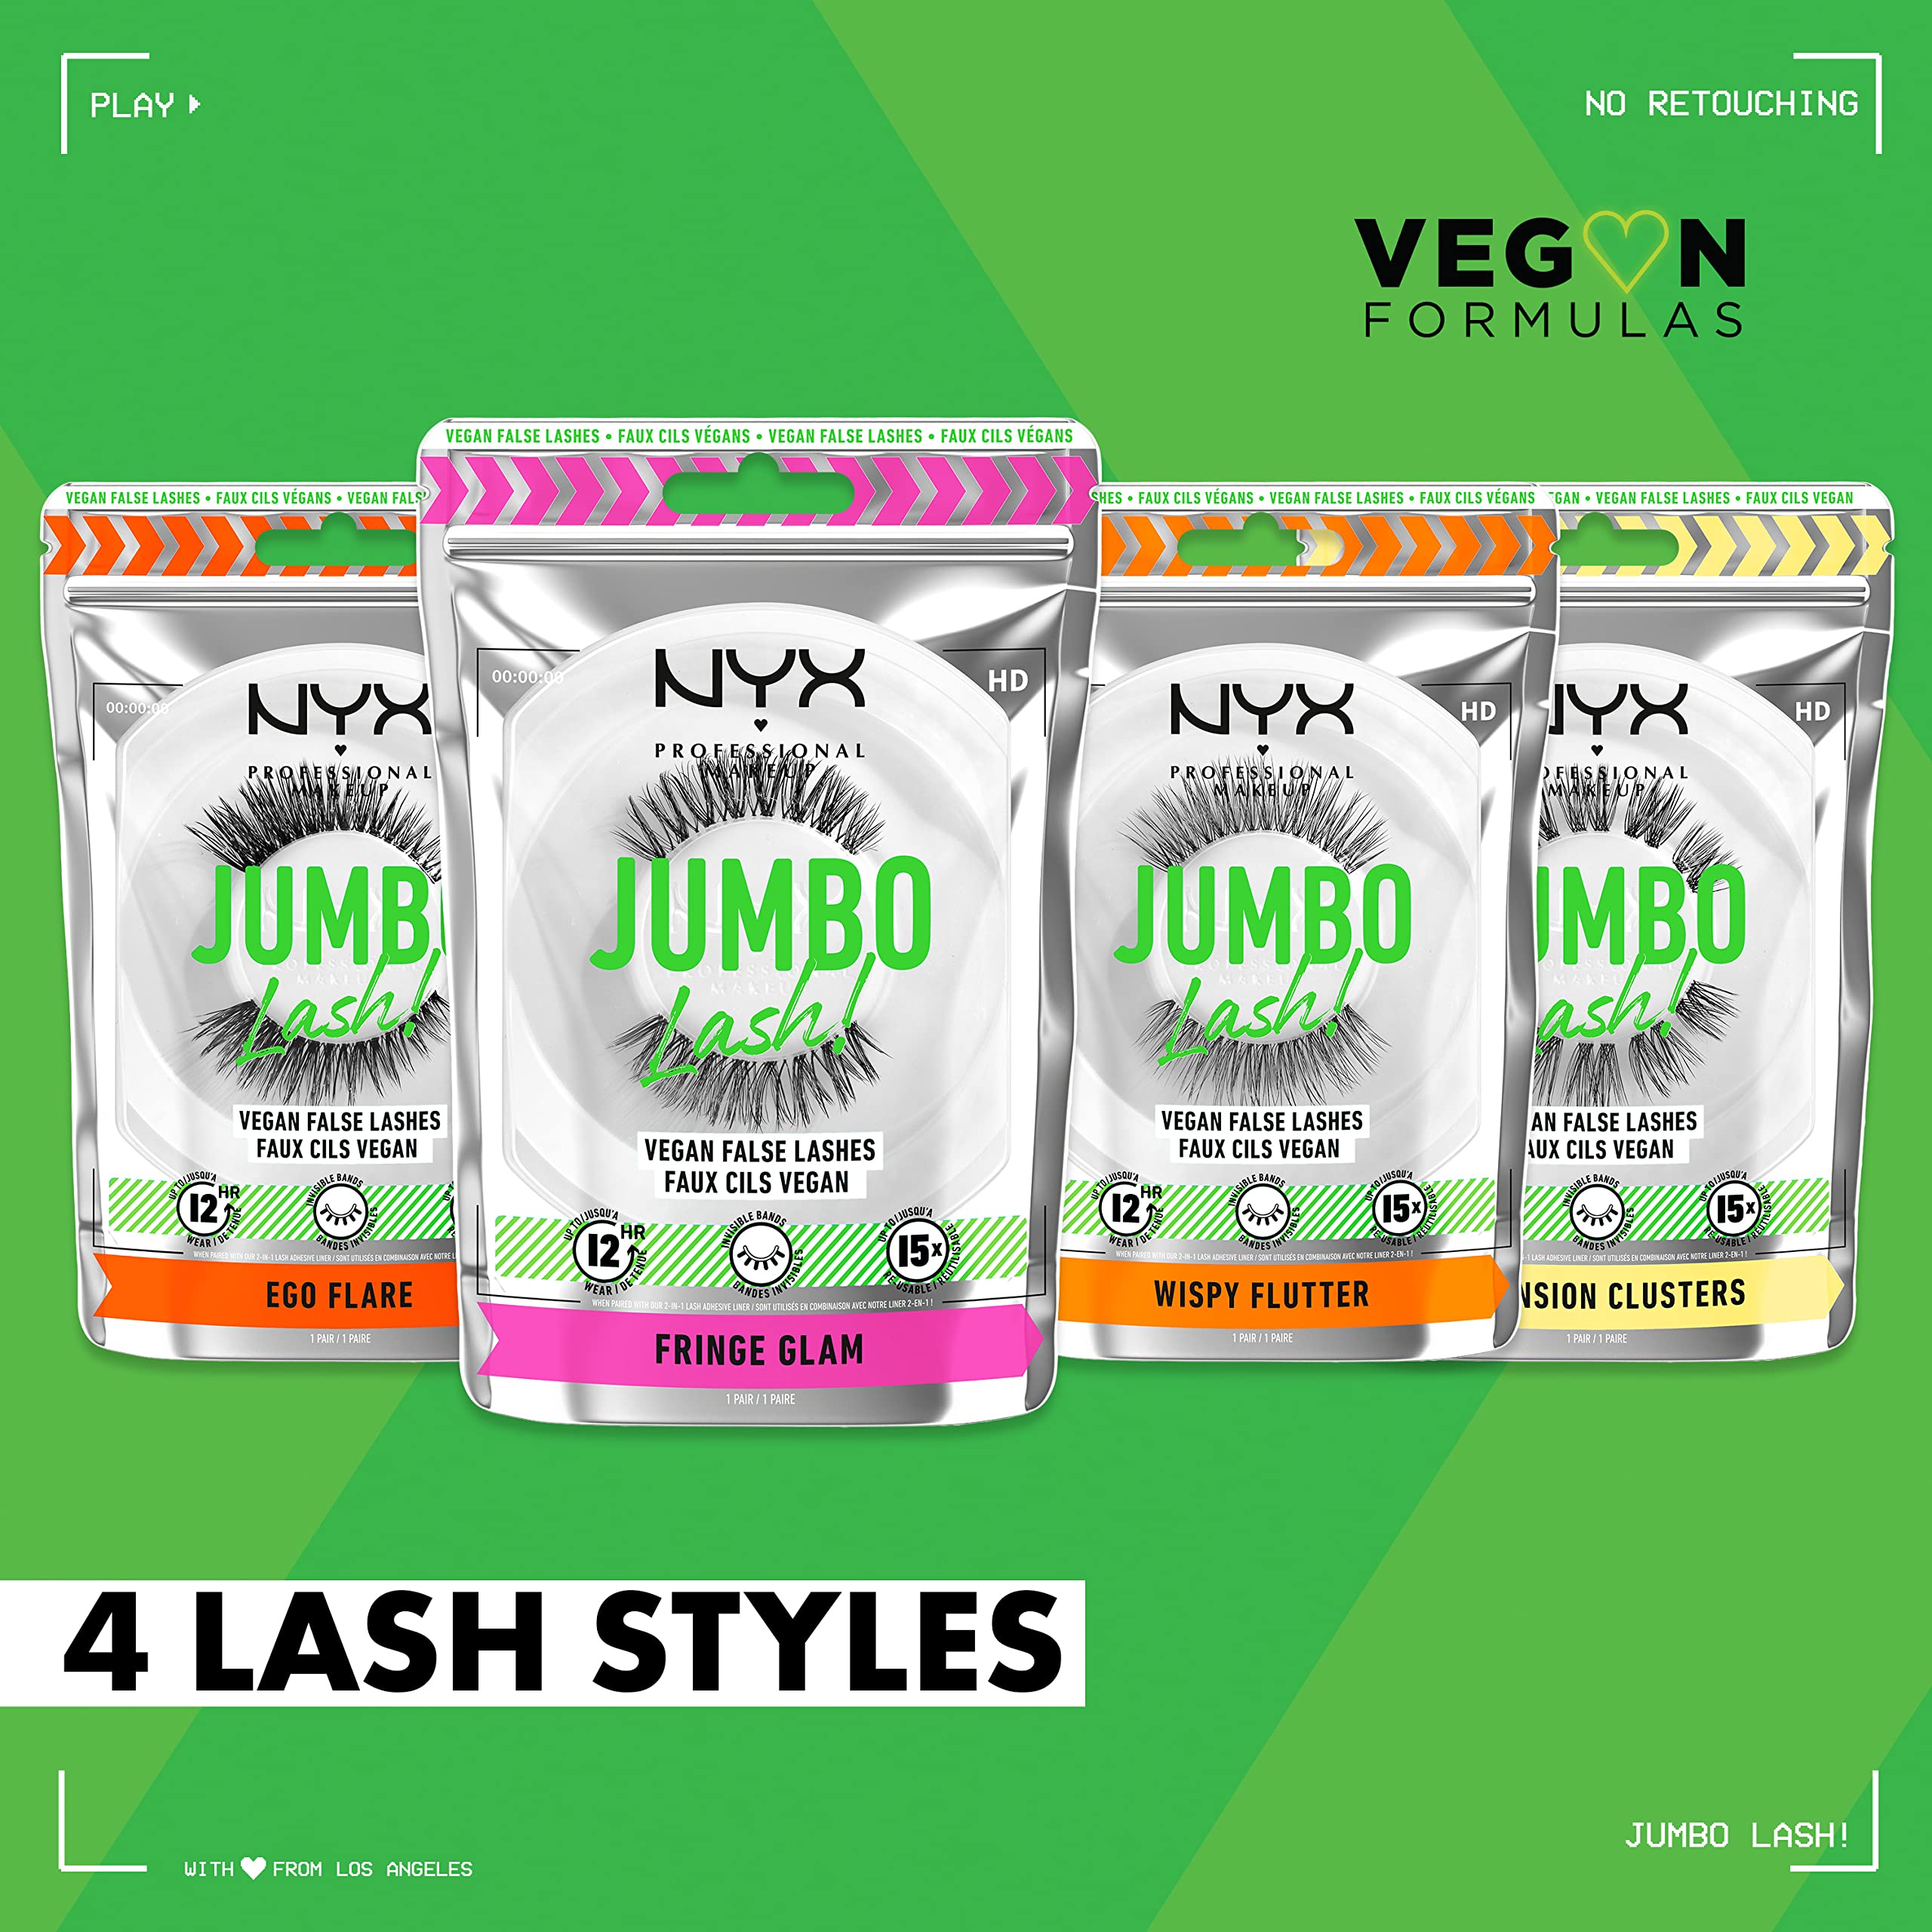 NYX PROFESSIONAL MAKEUP Jumbo Lash! Vegan False Eyelashes, Up to 12HR Wear, Reusable Fake Lashes - Fringe Glam